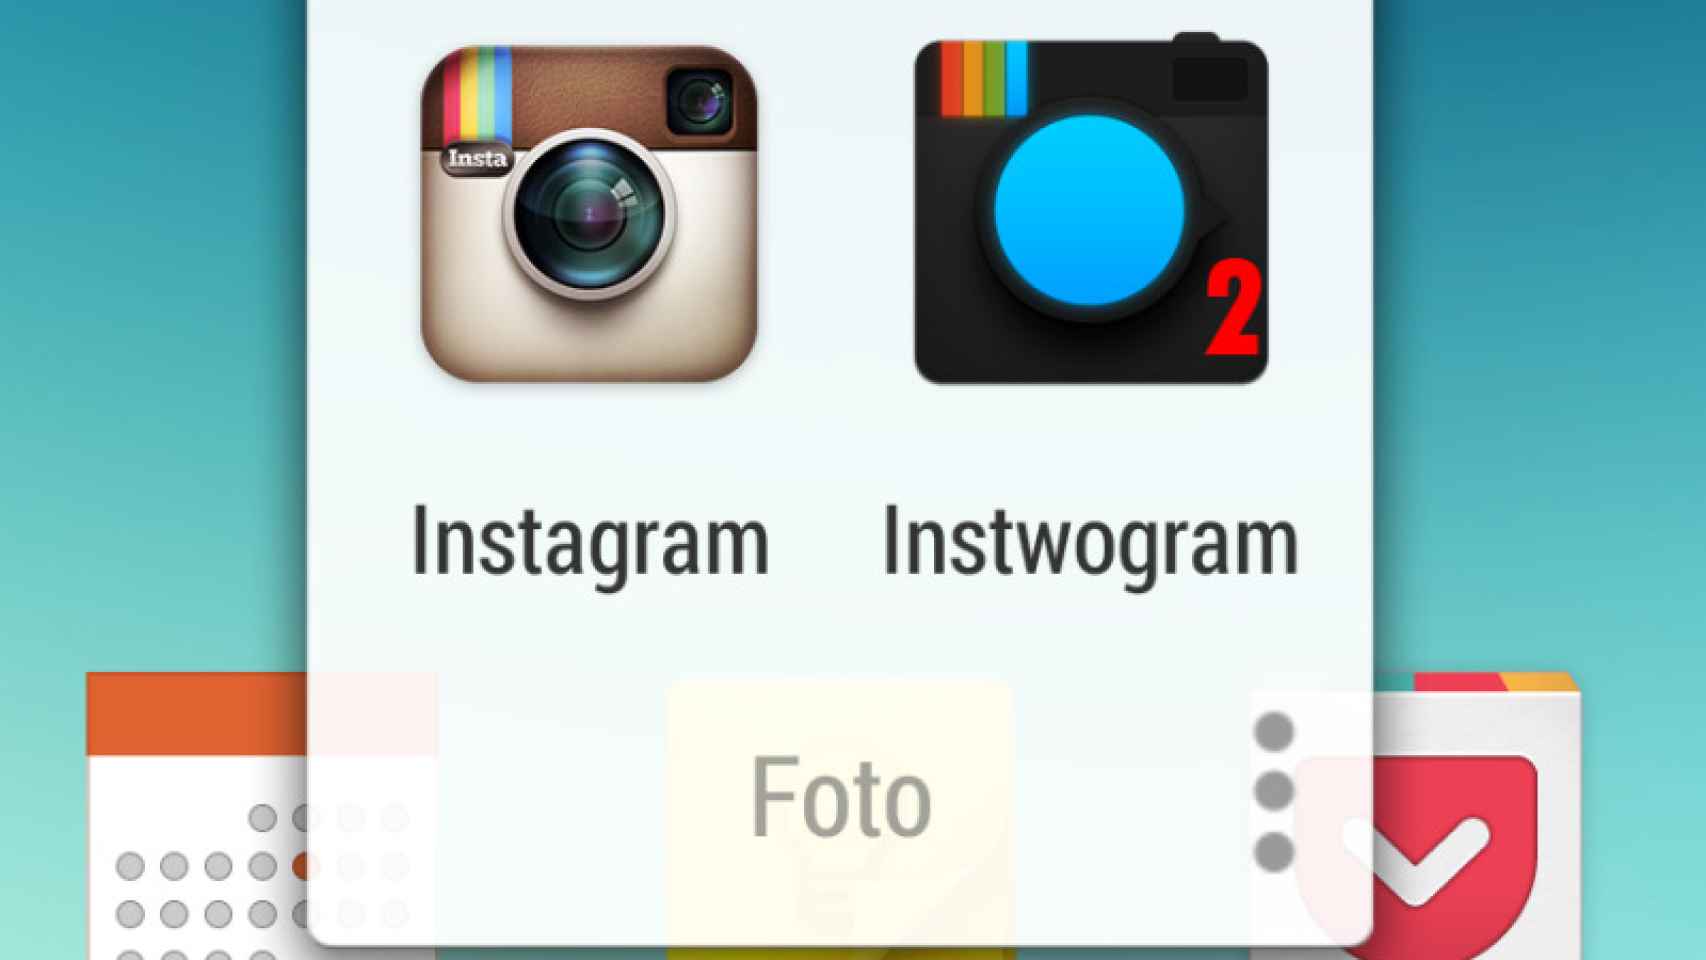 Instwogram, utiliza dos cuentas de Instagram en tu Android